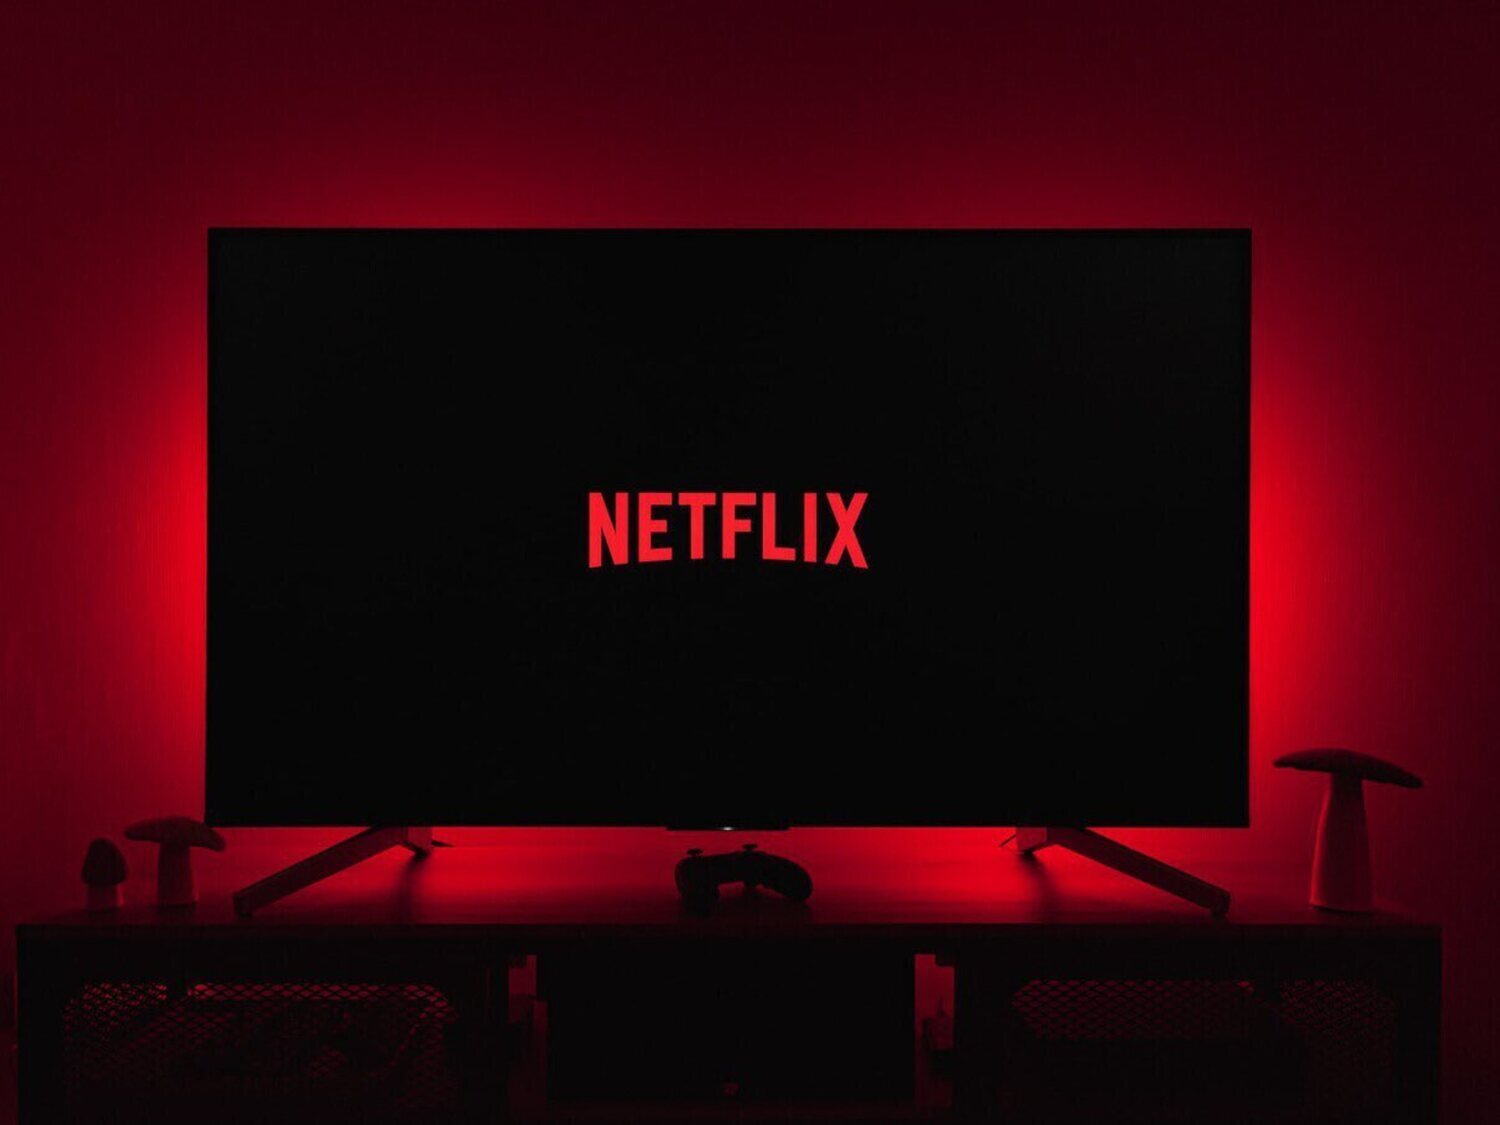 Cambios en Netflix: cómo te afecta si lo tienes contratado con Movistar, Orange o Vodafone